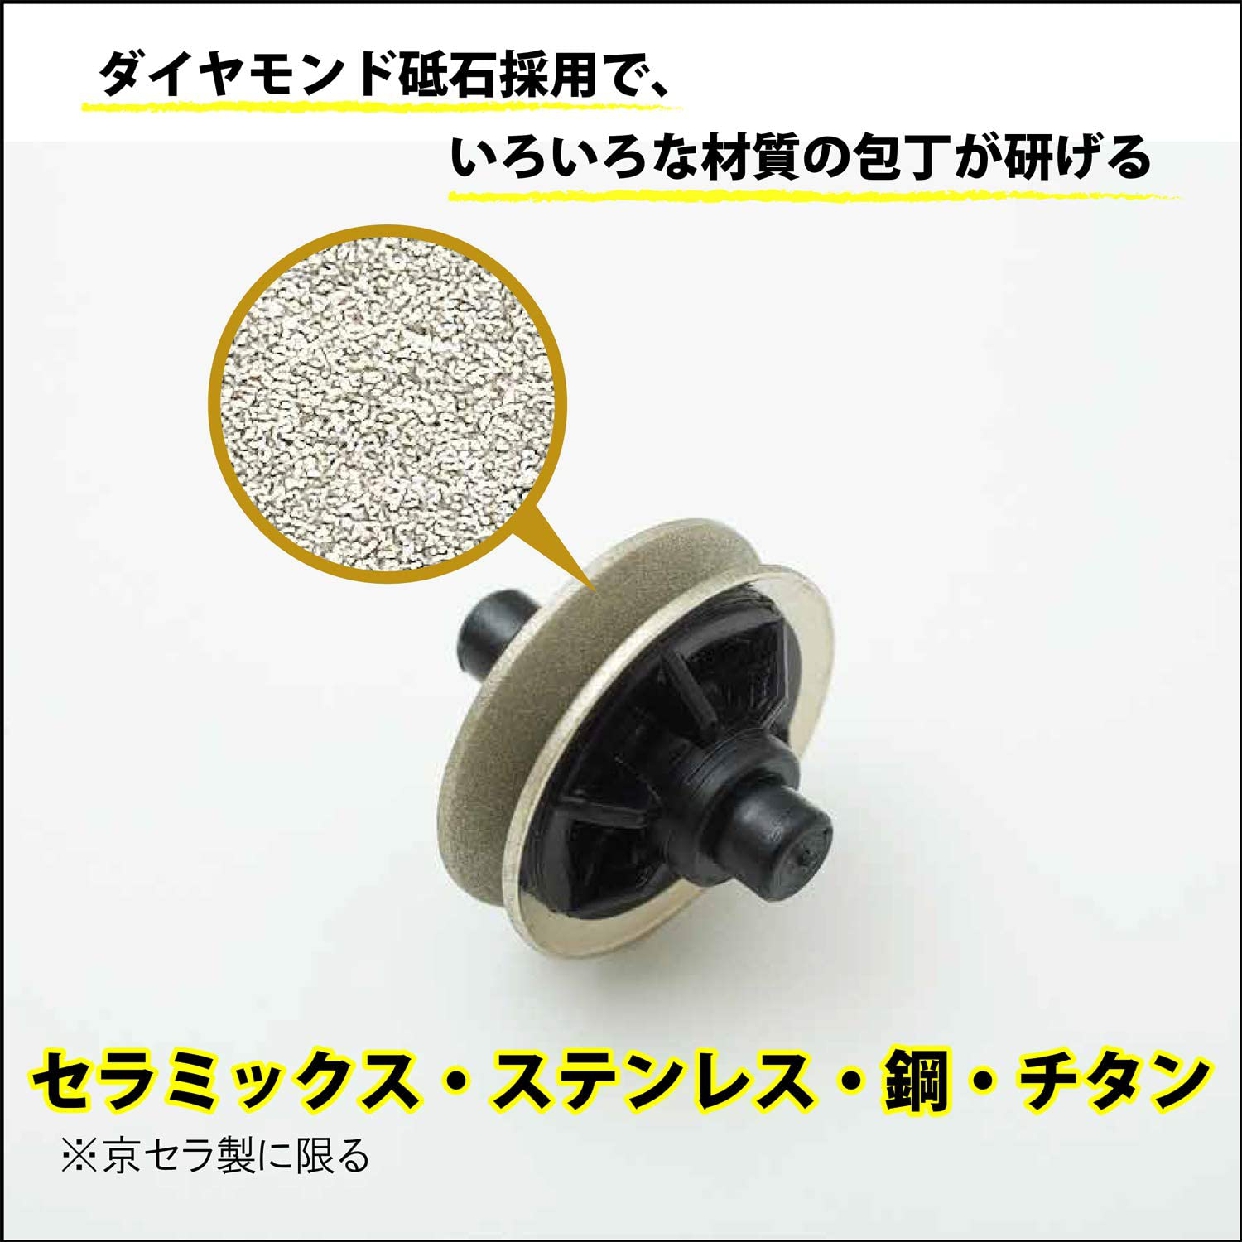 京セラ(KYOCERA) 電動ダイヤモンドシャープナー DS-38の商品画像4 